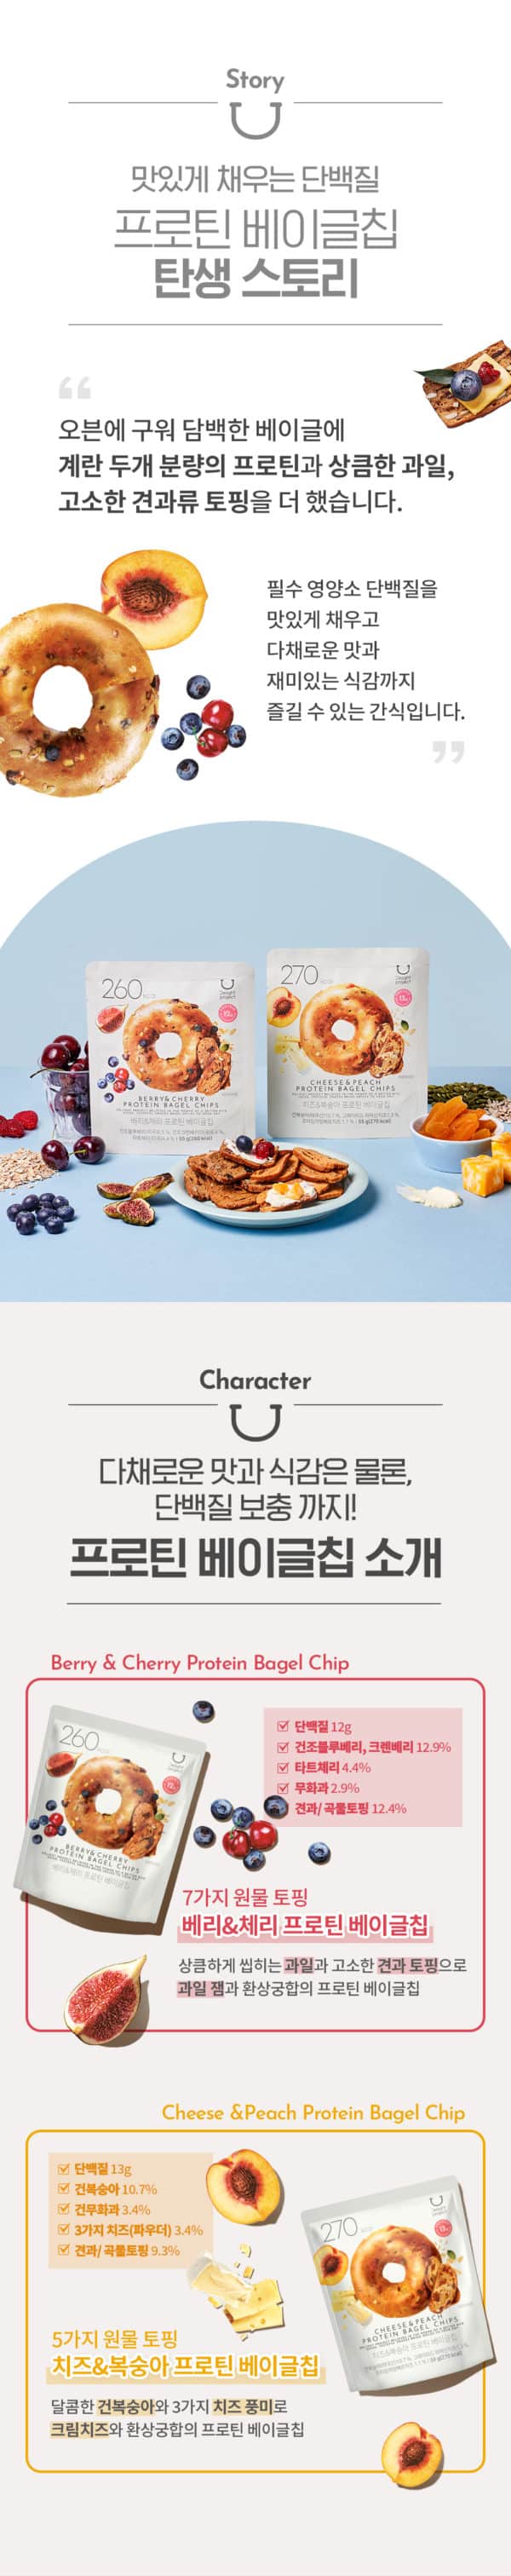 韓國食品-[Delight Project] Protein Bagel Chip (Berry & Cherry) 55g